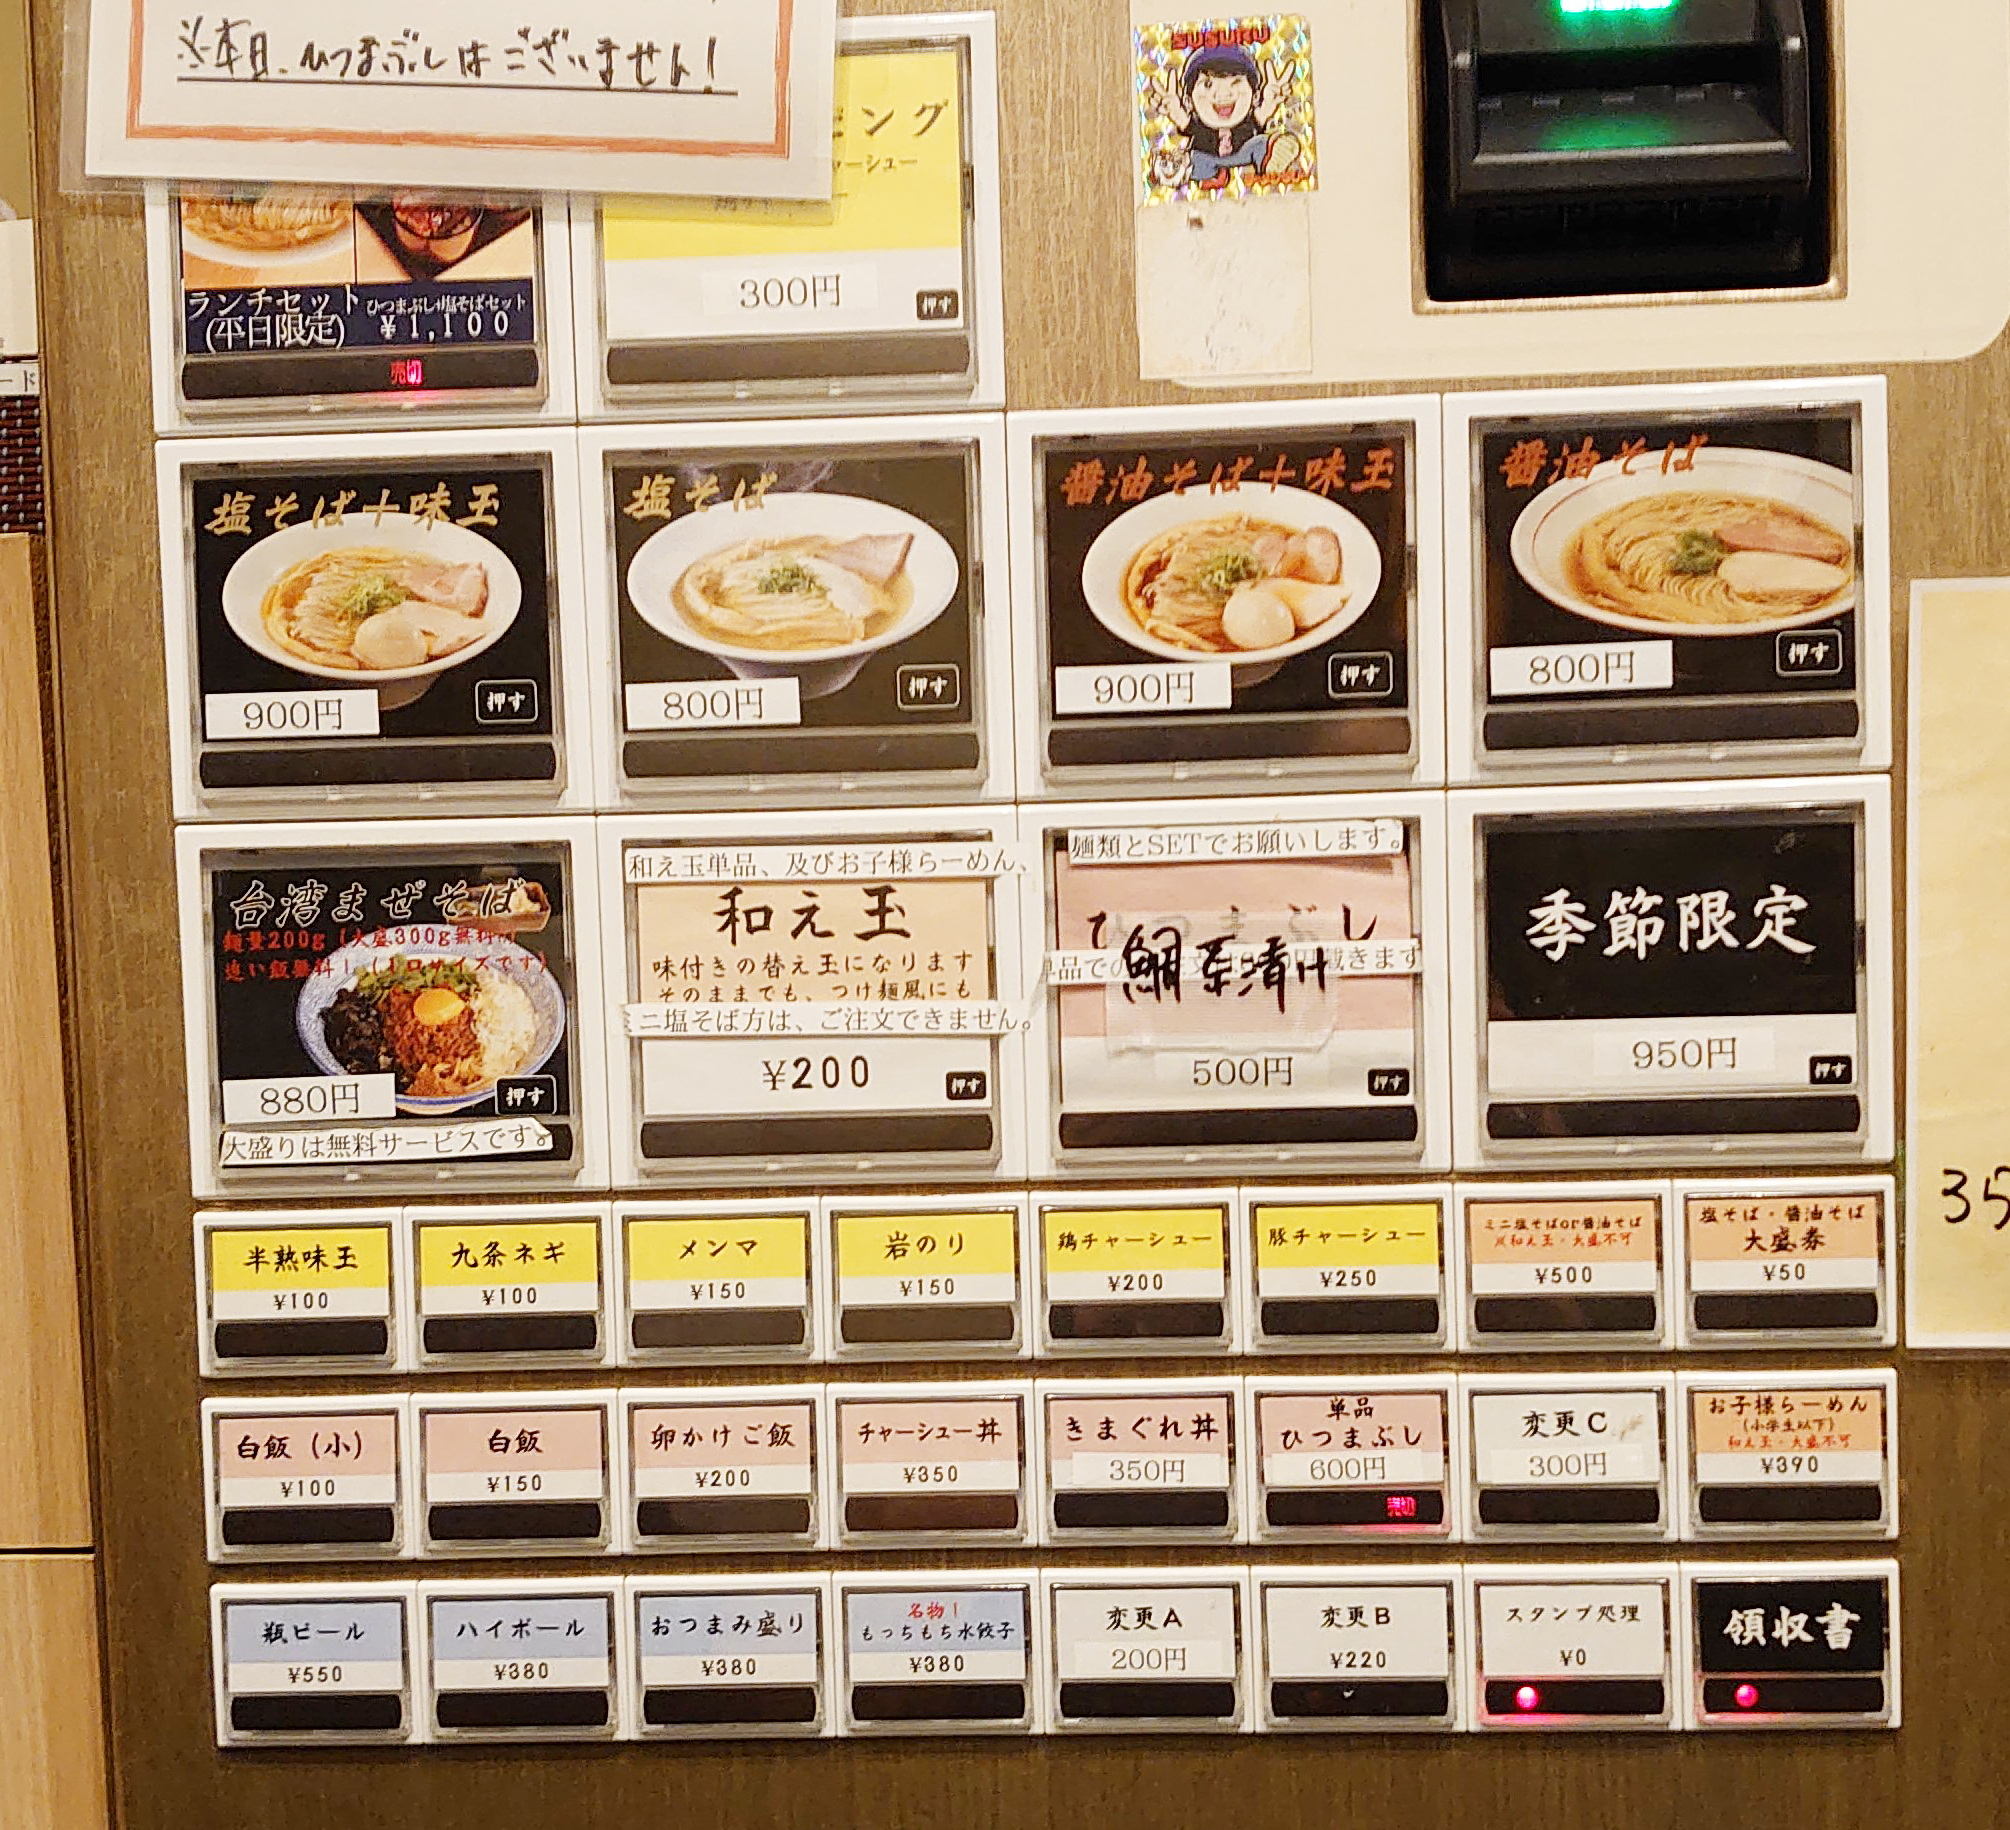 自家製麺 竜葵 メニュー